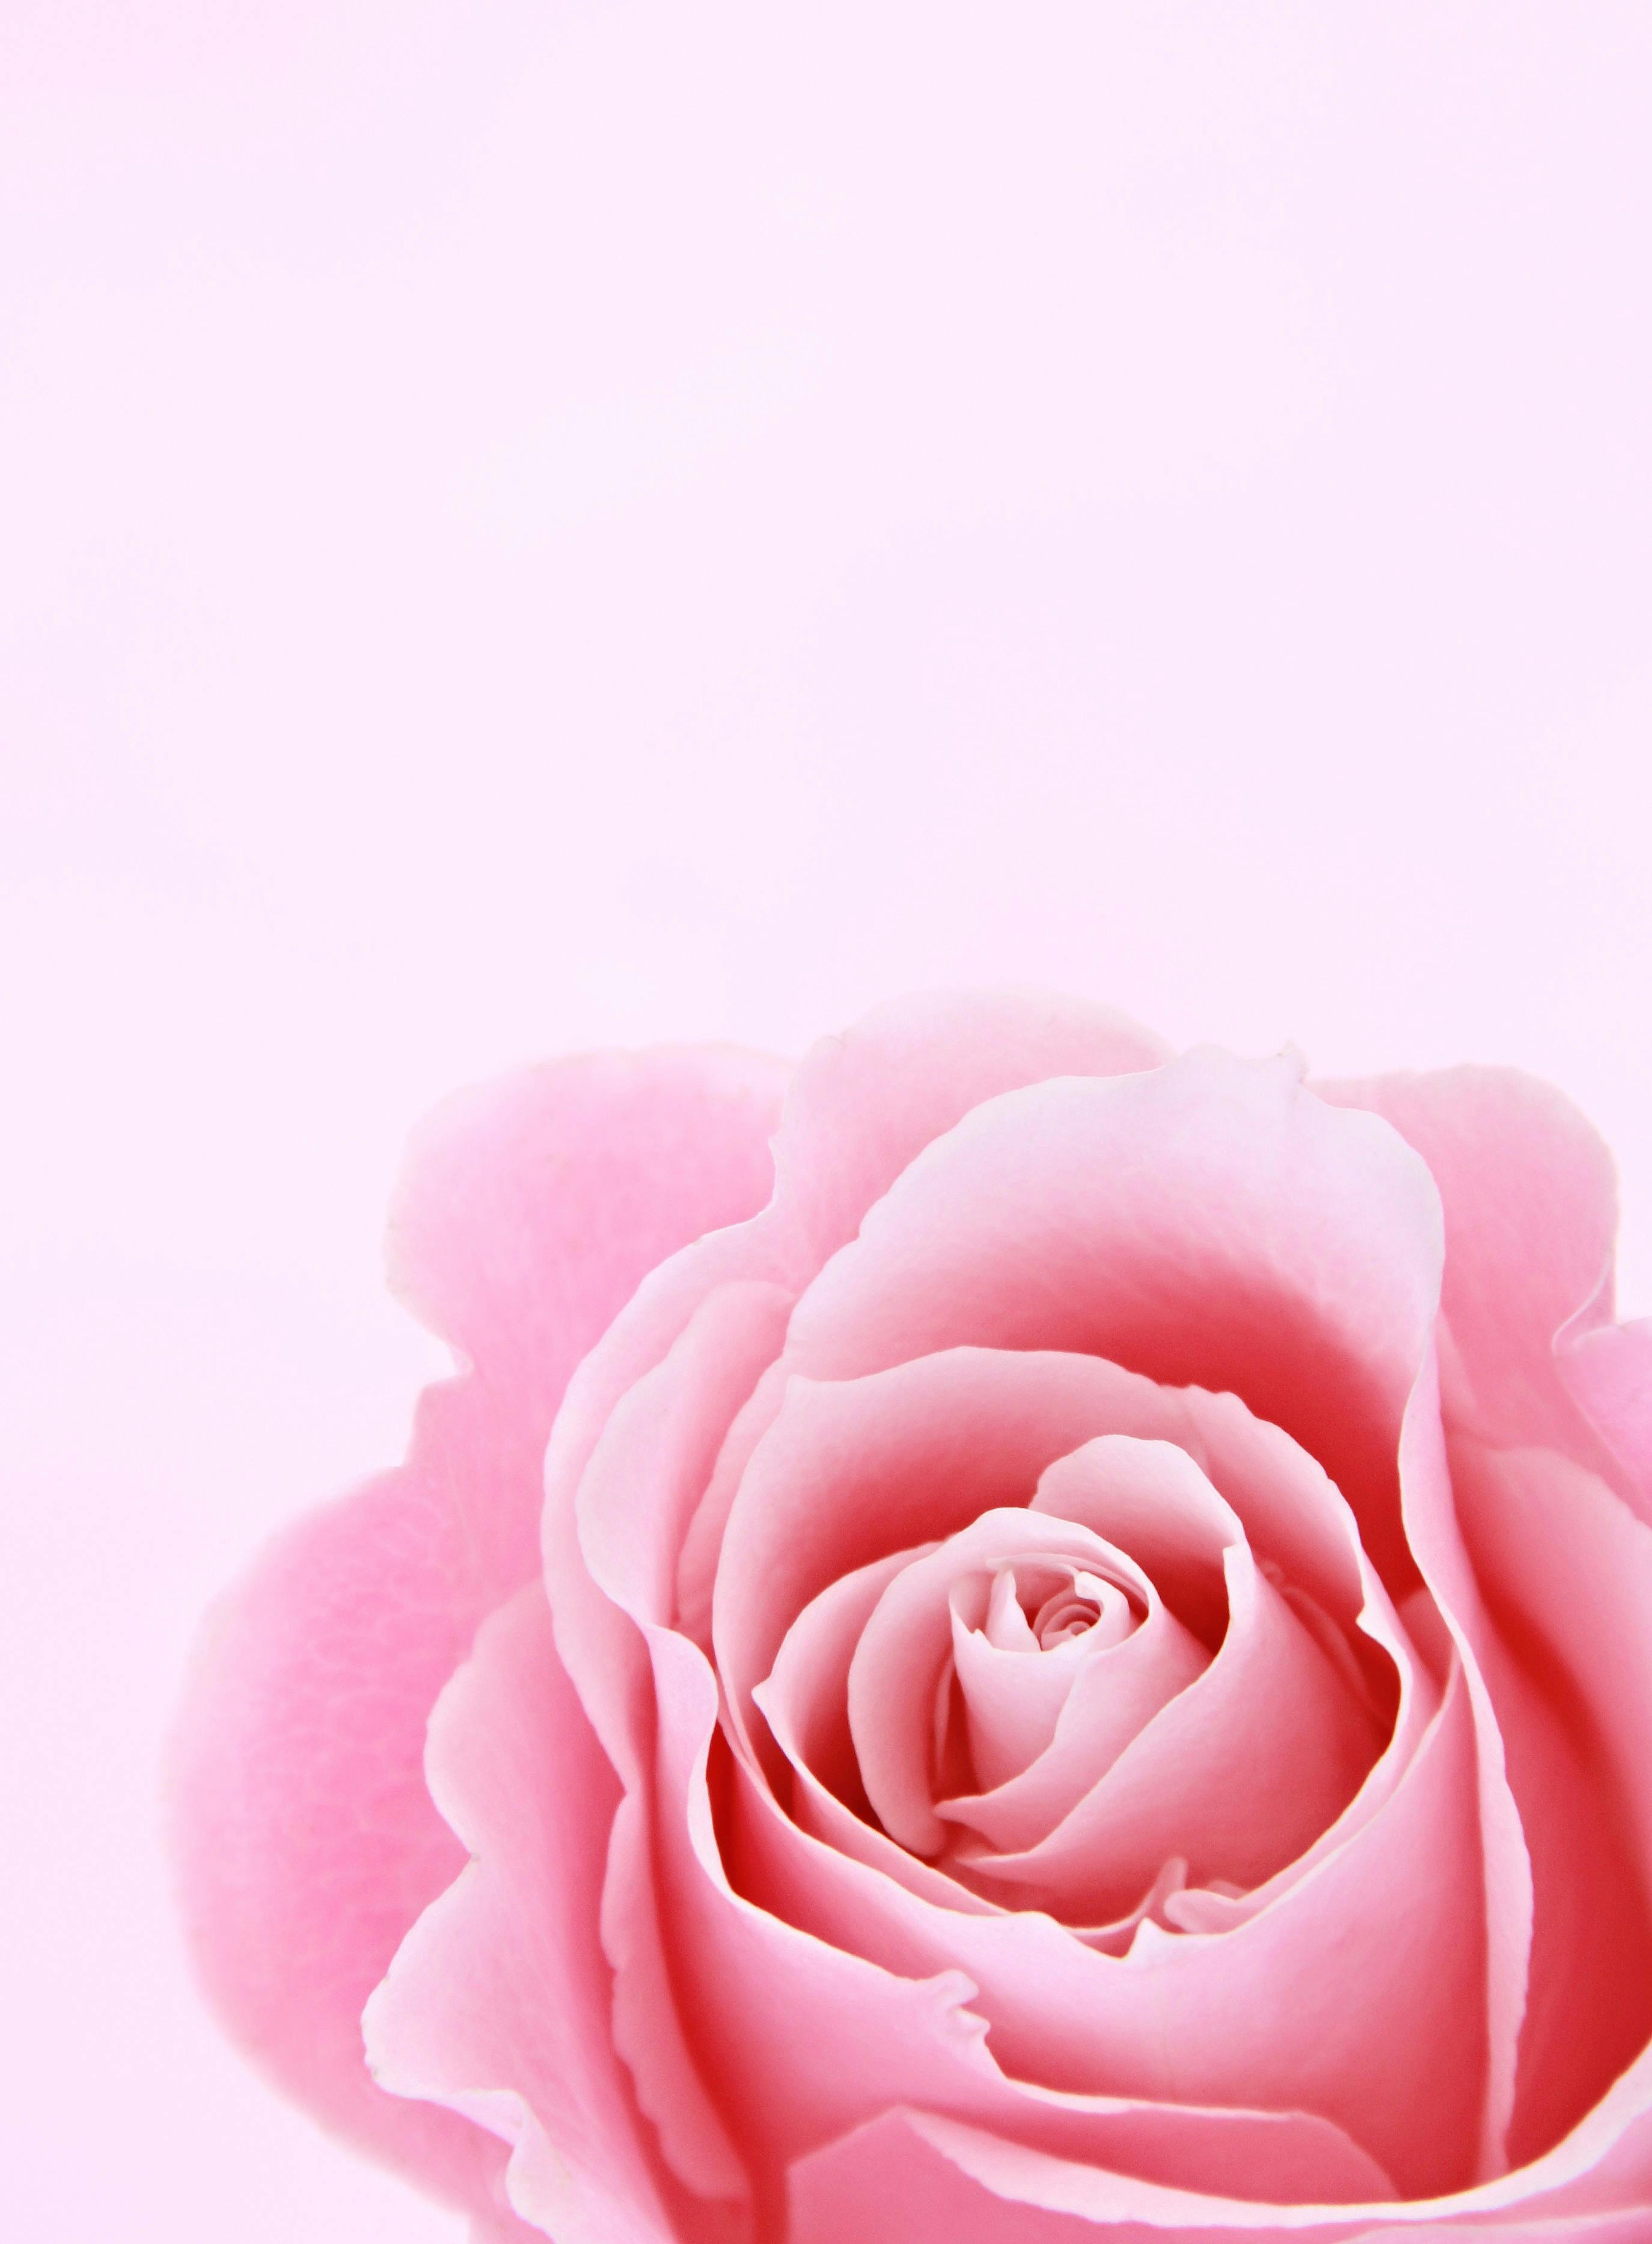 Pink Flowers Roses  Free photo on Pixabay  Pixabay